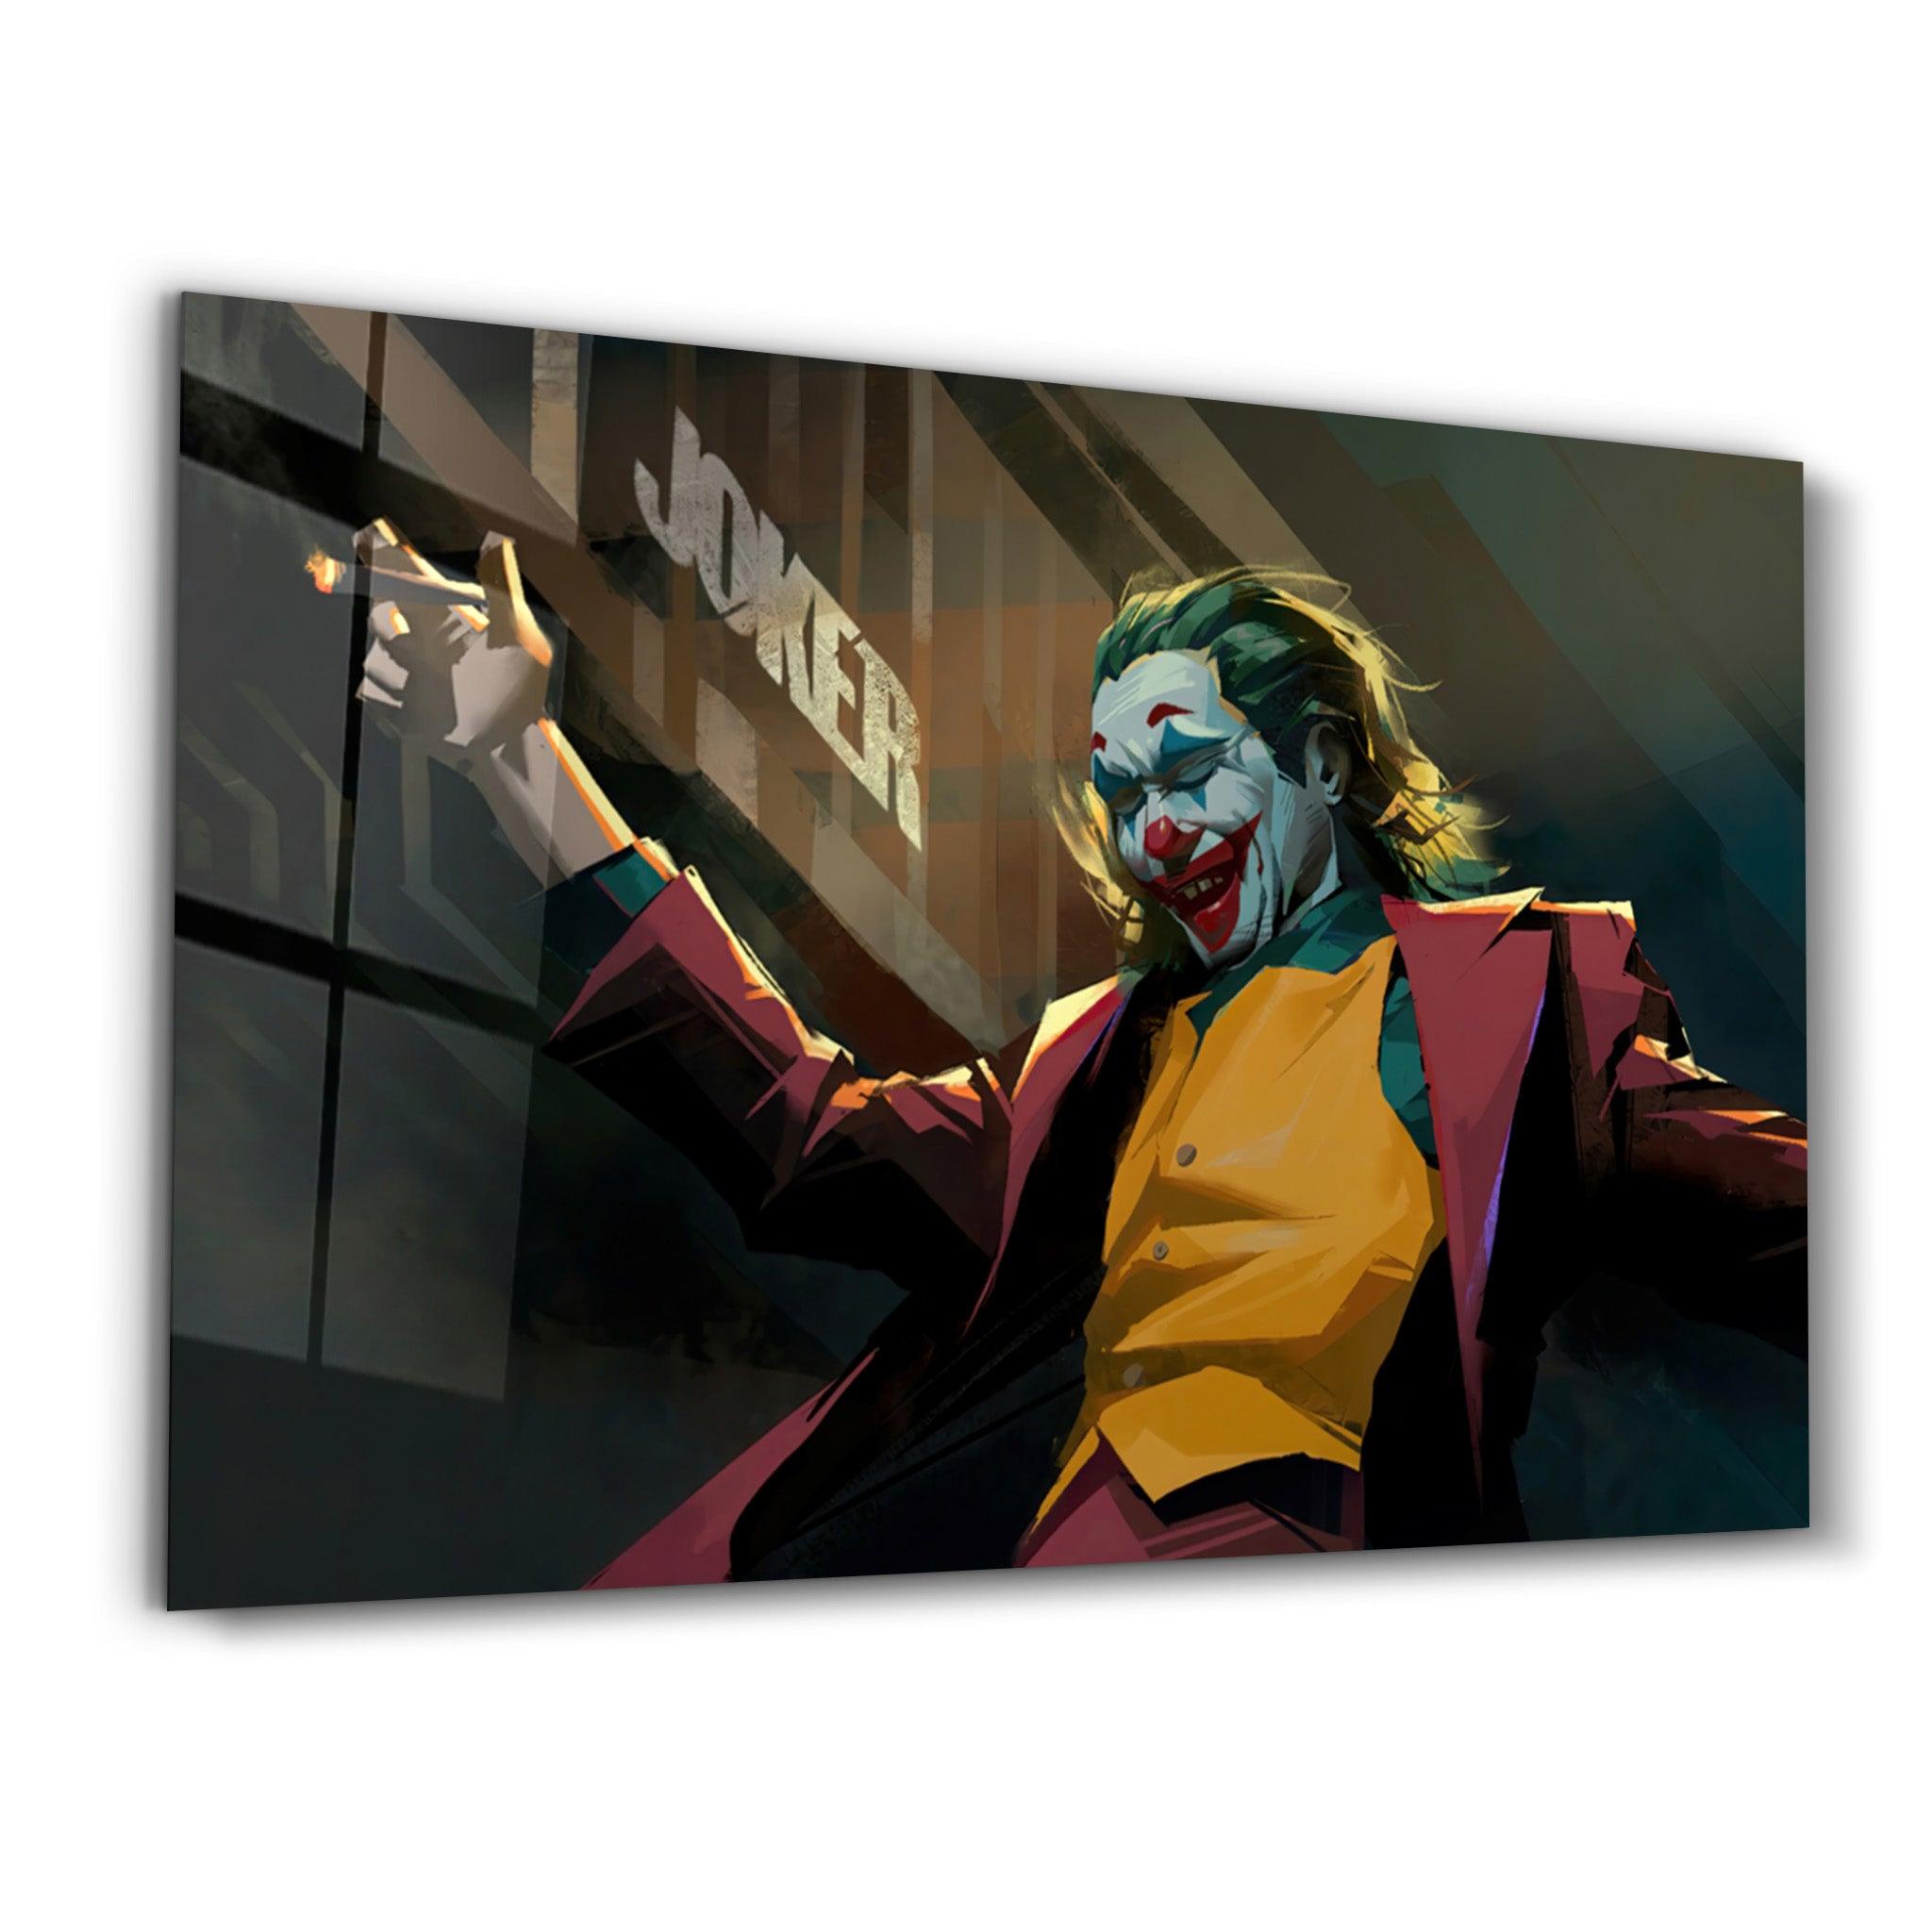 Abstract Joker | Glass Wall Art - ArtDesigna Glass Printing Wall Art